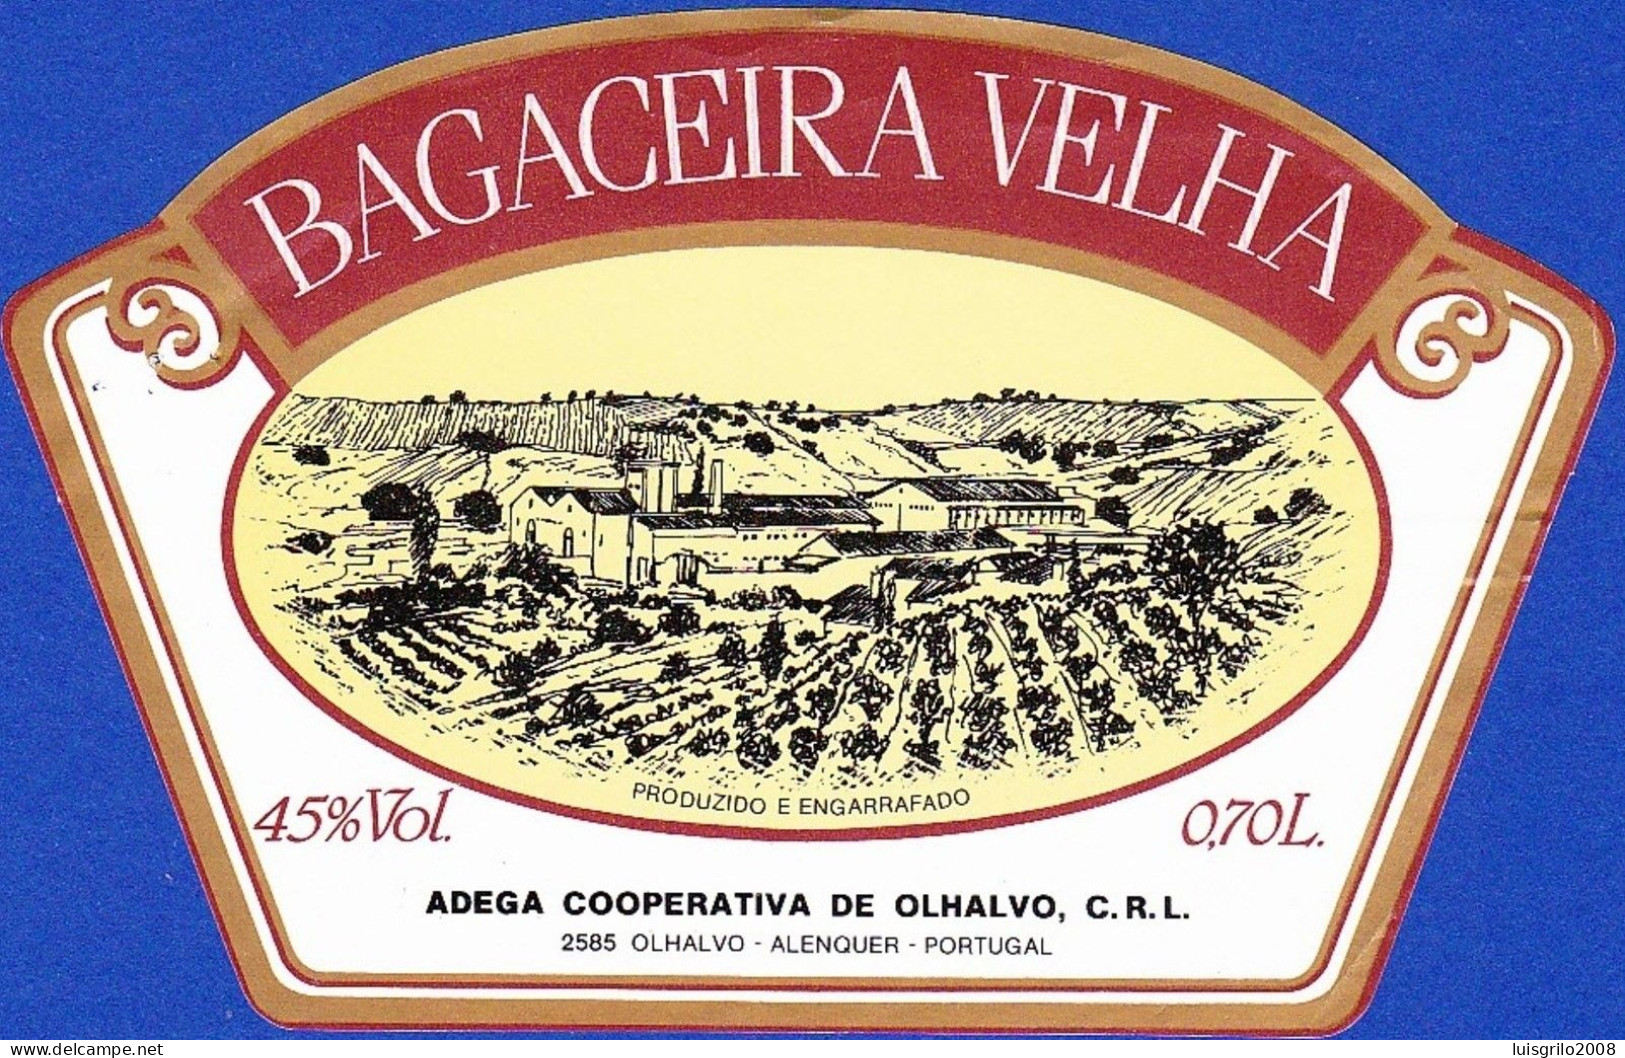 Brandy Label, Portugal - BAGACEIRA VELHA. Adega Cooperativa De Olhalvo.  Alenquer - Alcoholen & Sterke Drank